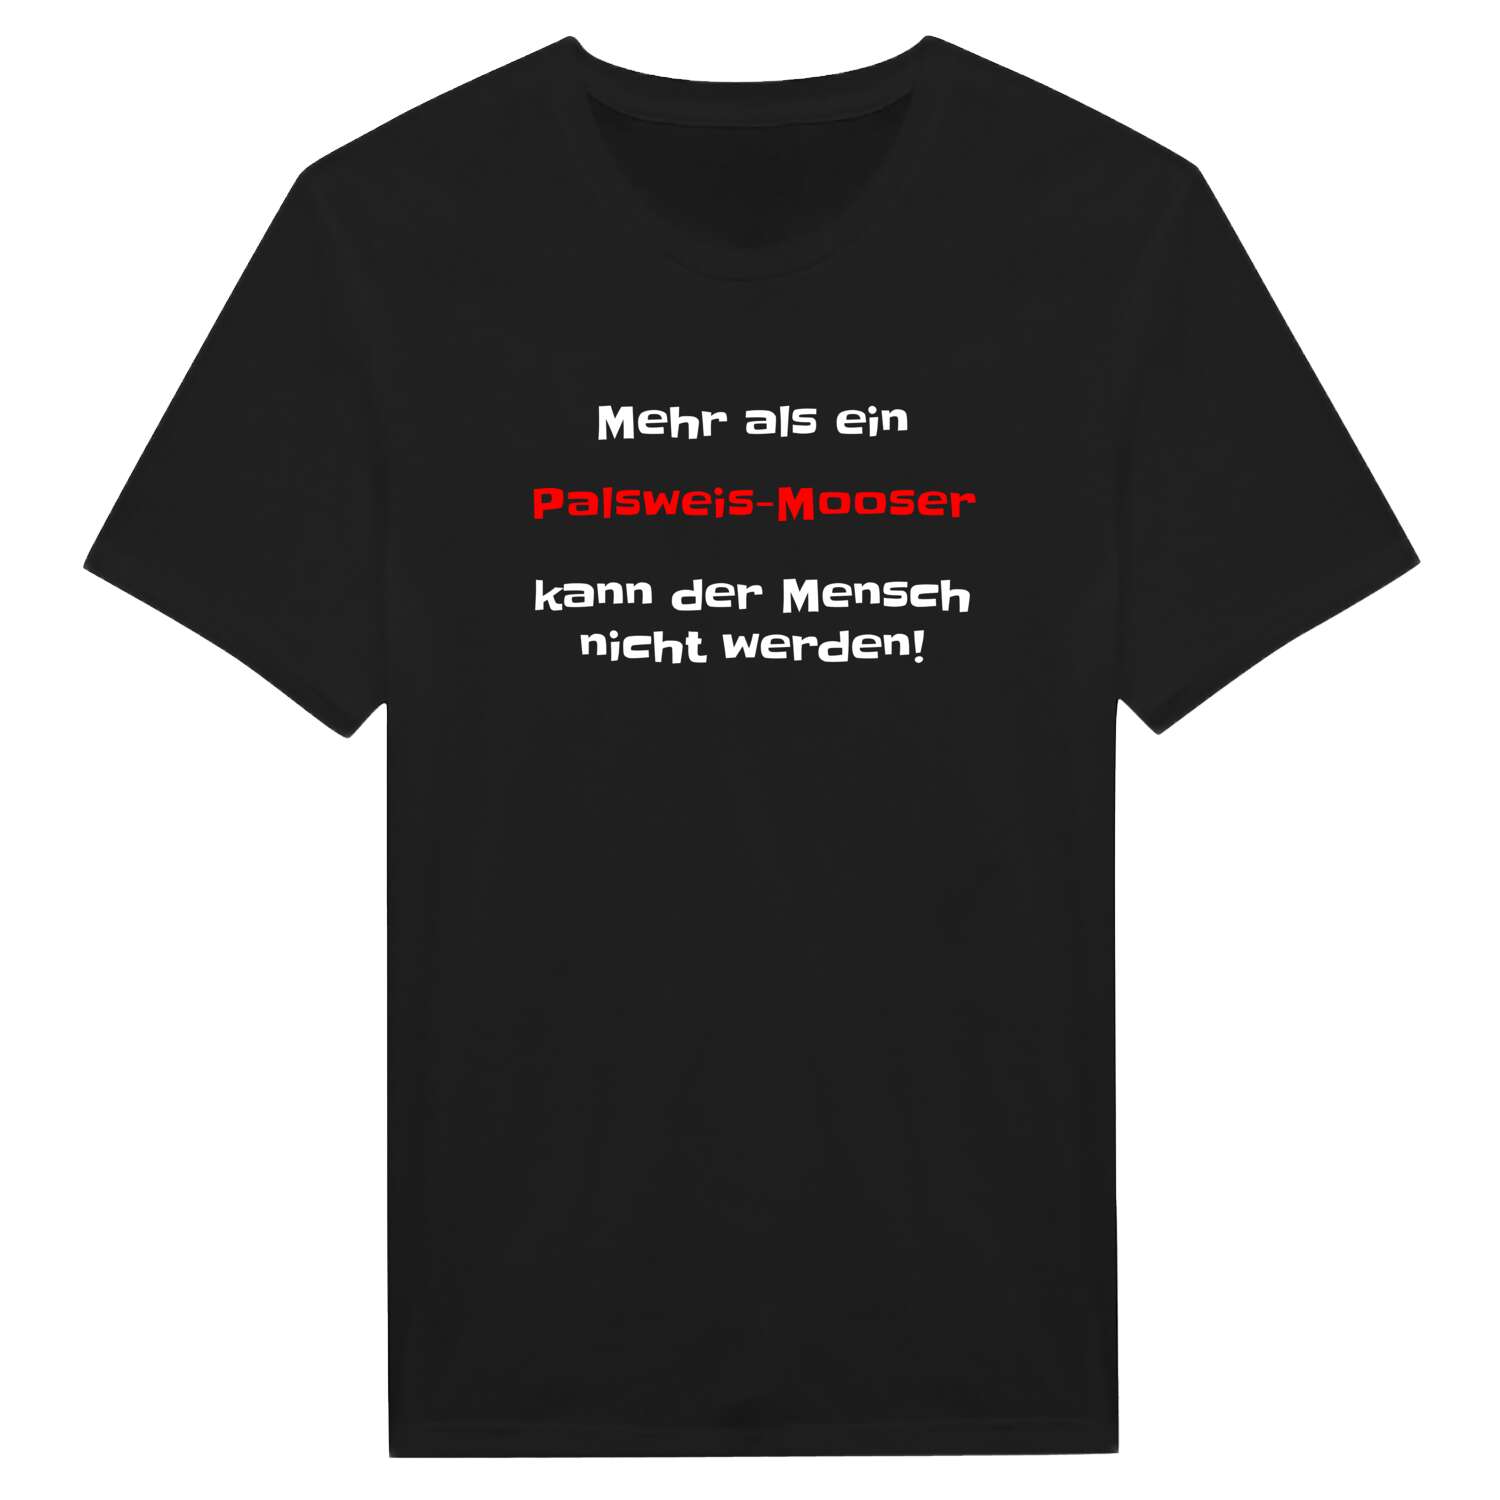 Palsweis-Moos T-Shirt »Mehr als ein«